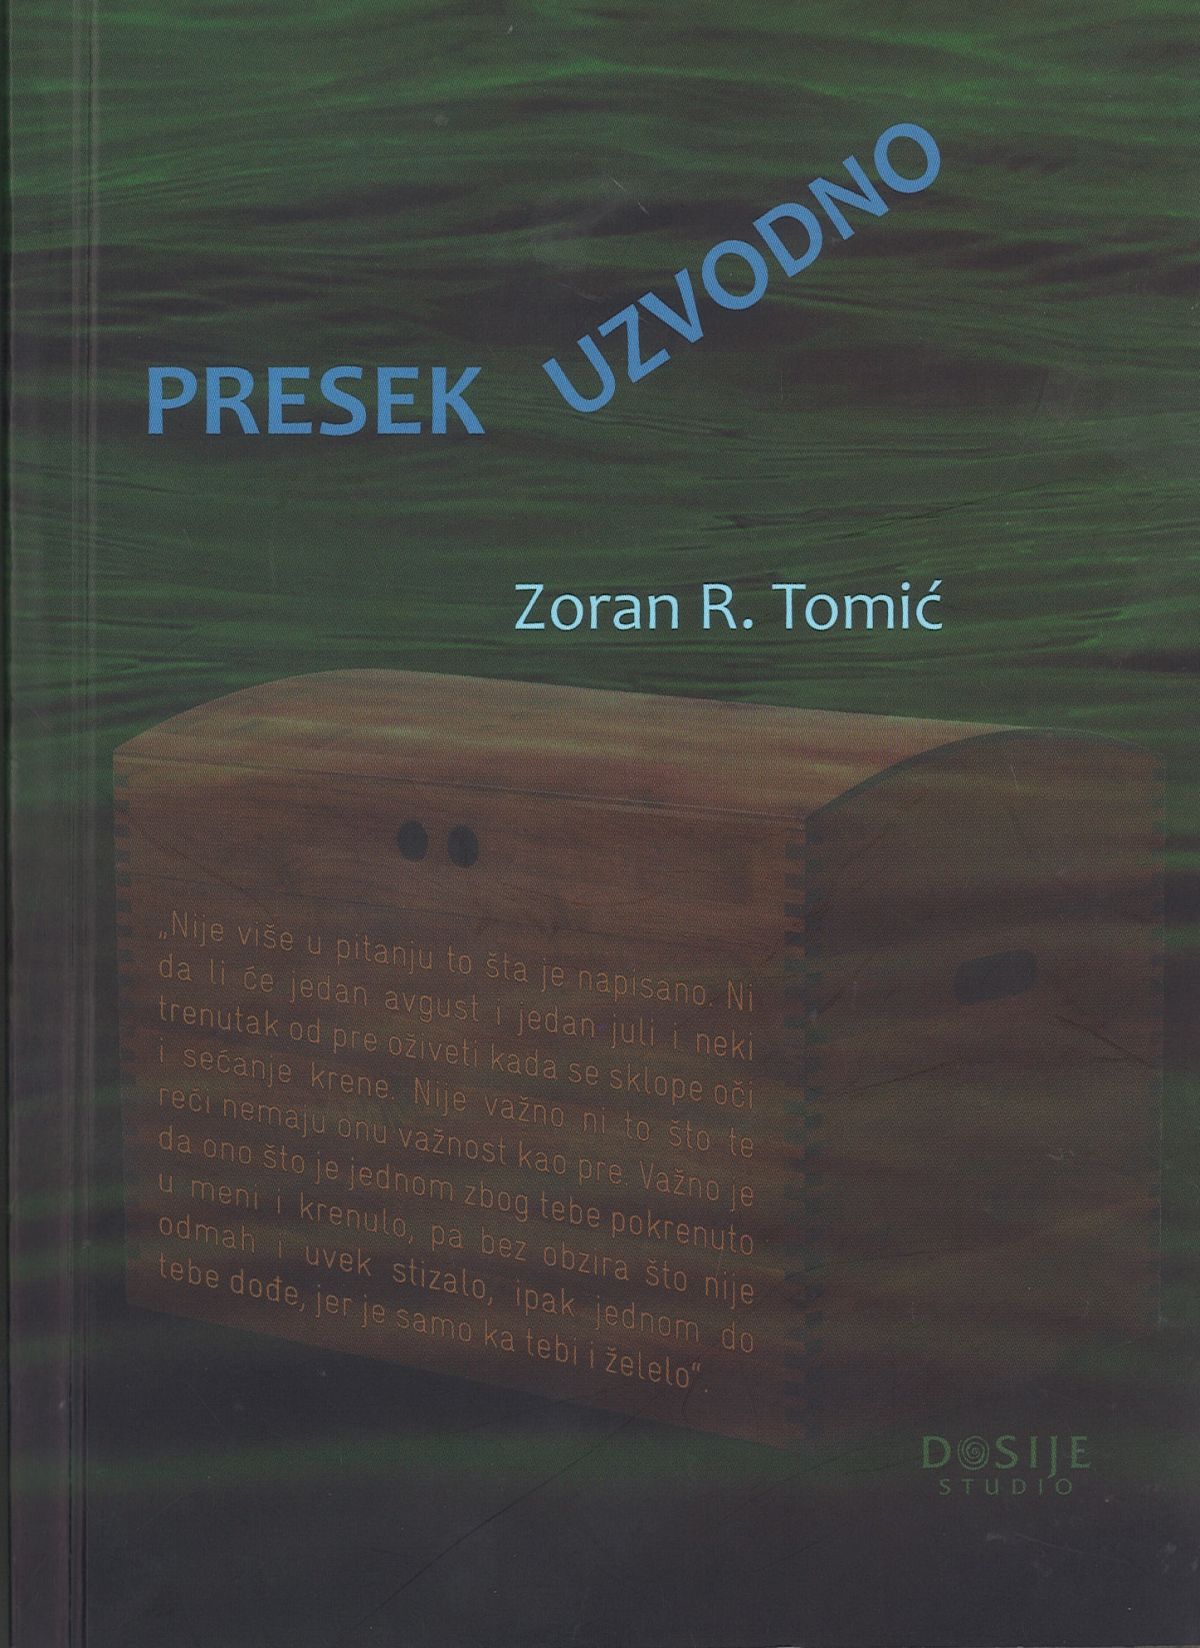 Promocija knjige "Presek uzvodno" prof. dr Zorana Tomića